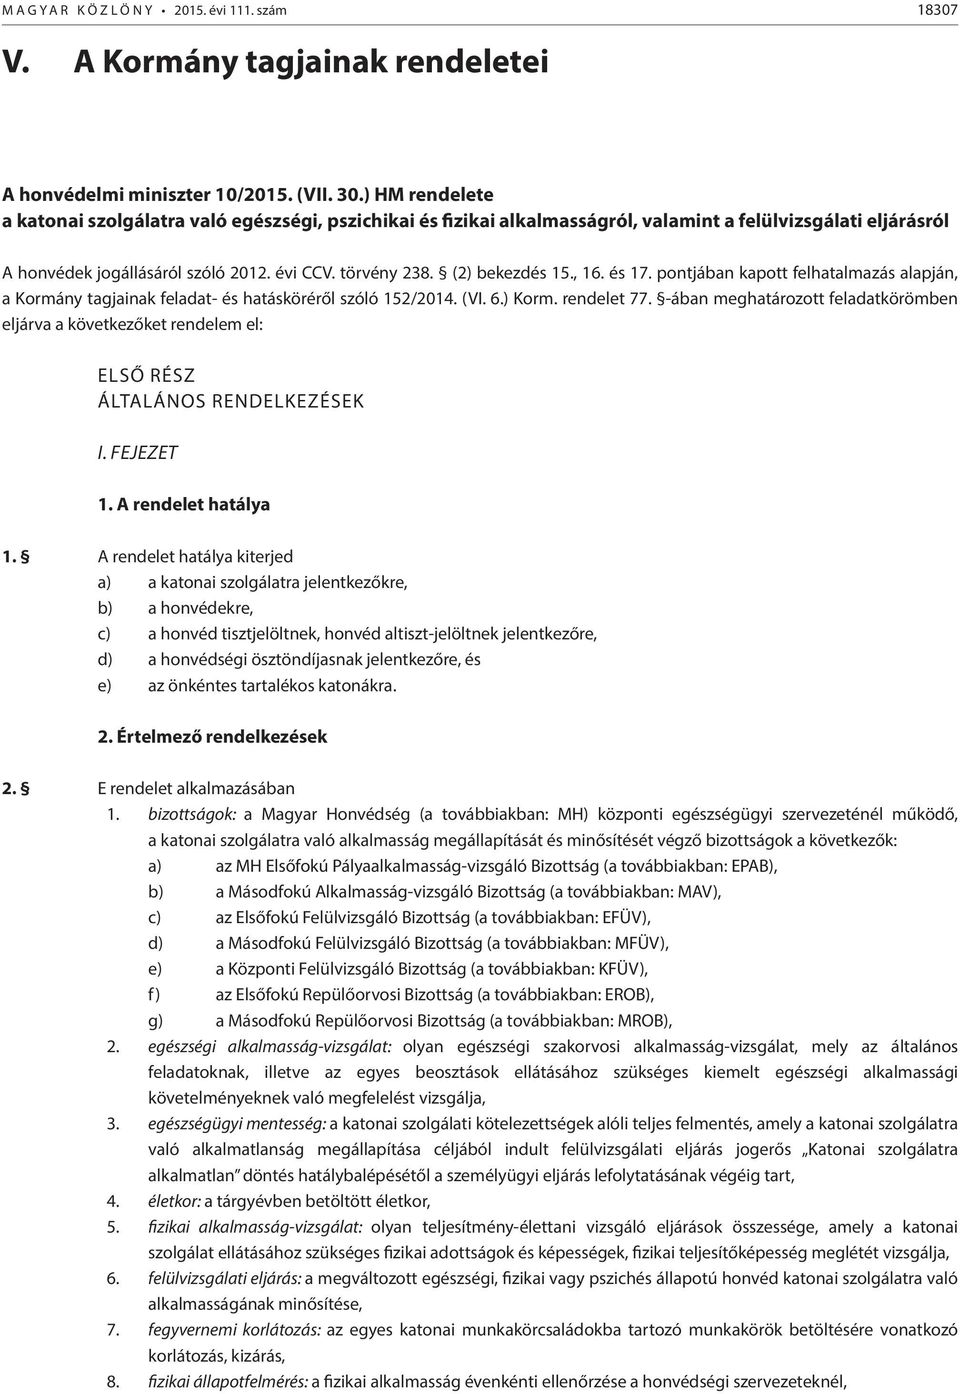 (2) bekezdés 15., 16. és 17. pontjában kapott felhatalmazás alapján, a Kormány tagjainak feladat- és hatásköréről szóló 152/2014. (VI. 6.) Korm. rendelet 77.